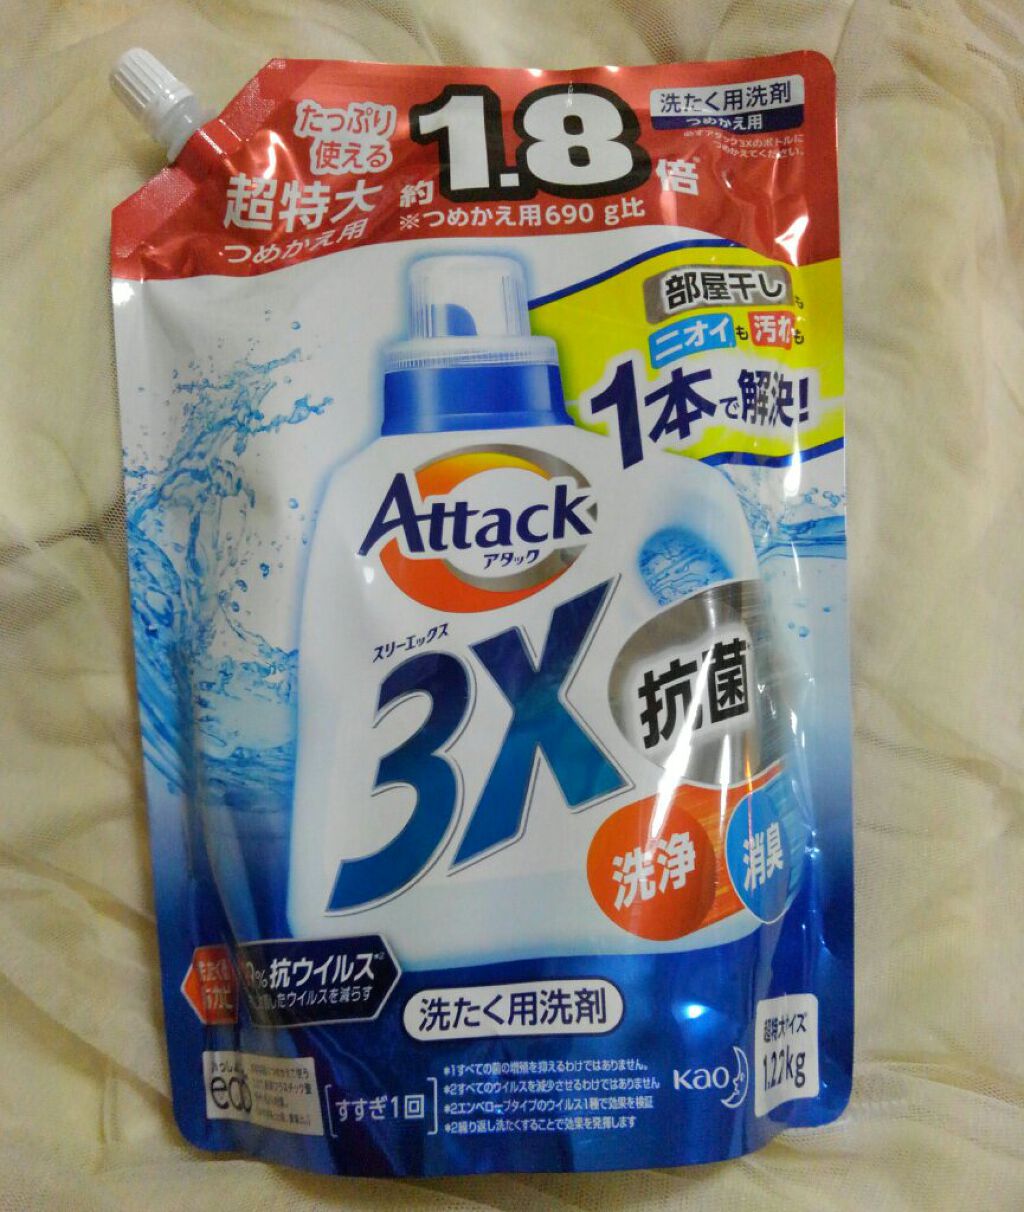 アタック 3X(抗菌・消臭・洗浄) 詰め替え 大容量 1440g×10個